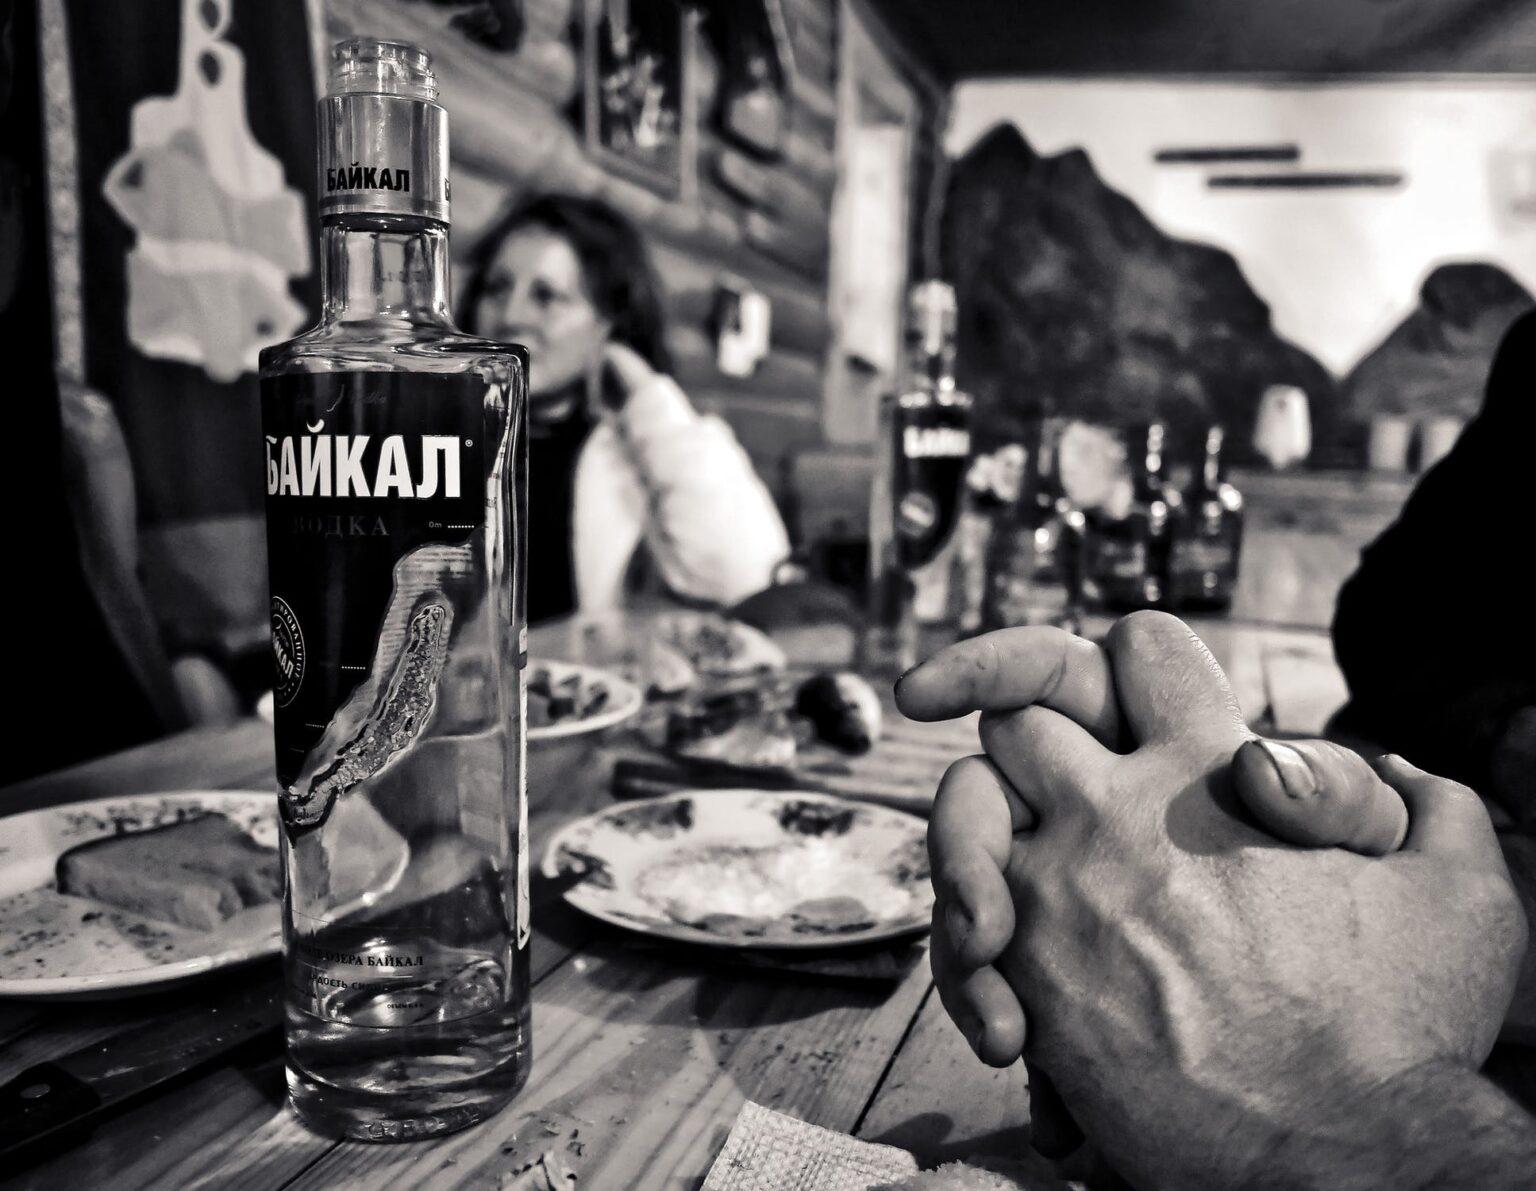 Une bouteille de vodka presque vide sur une table.